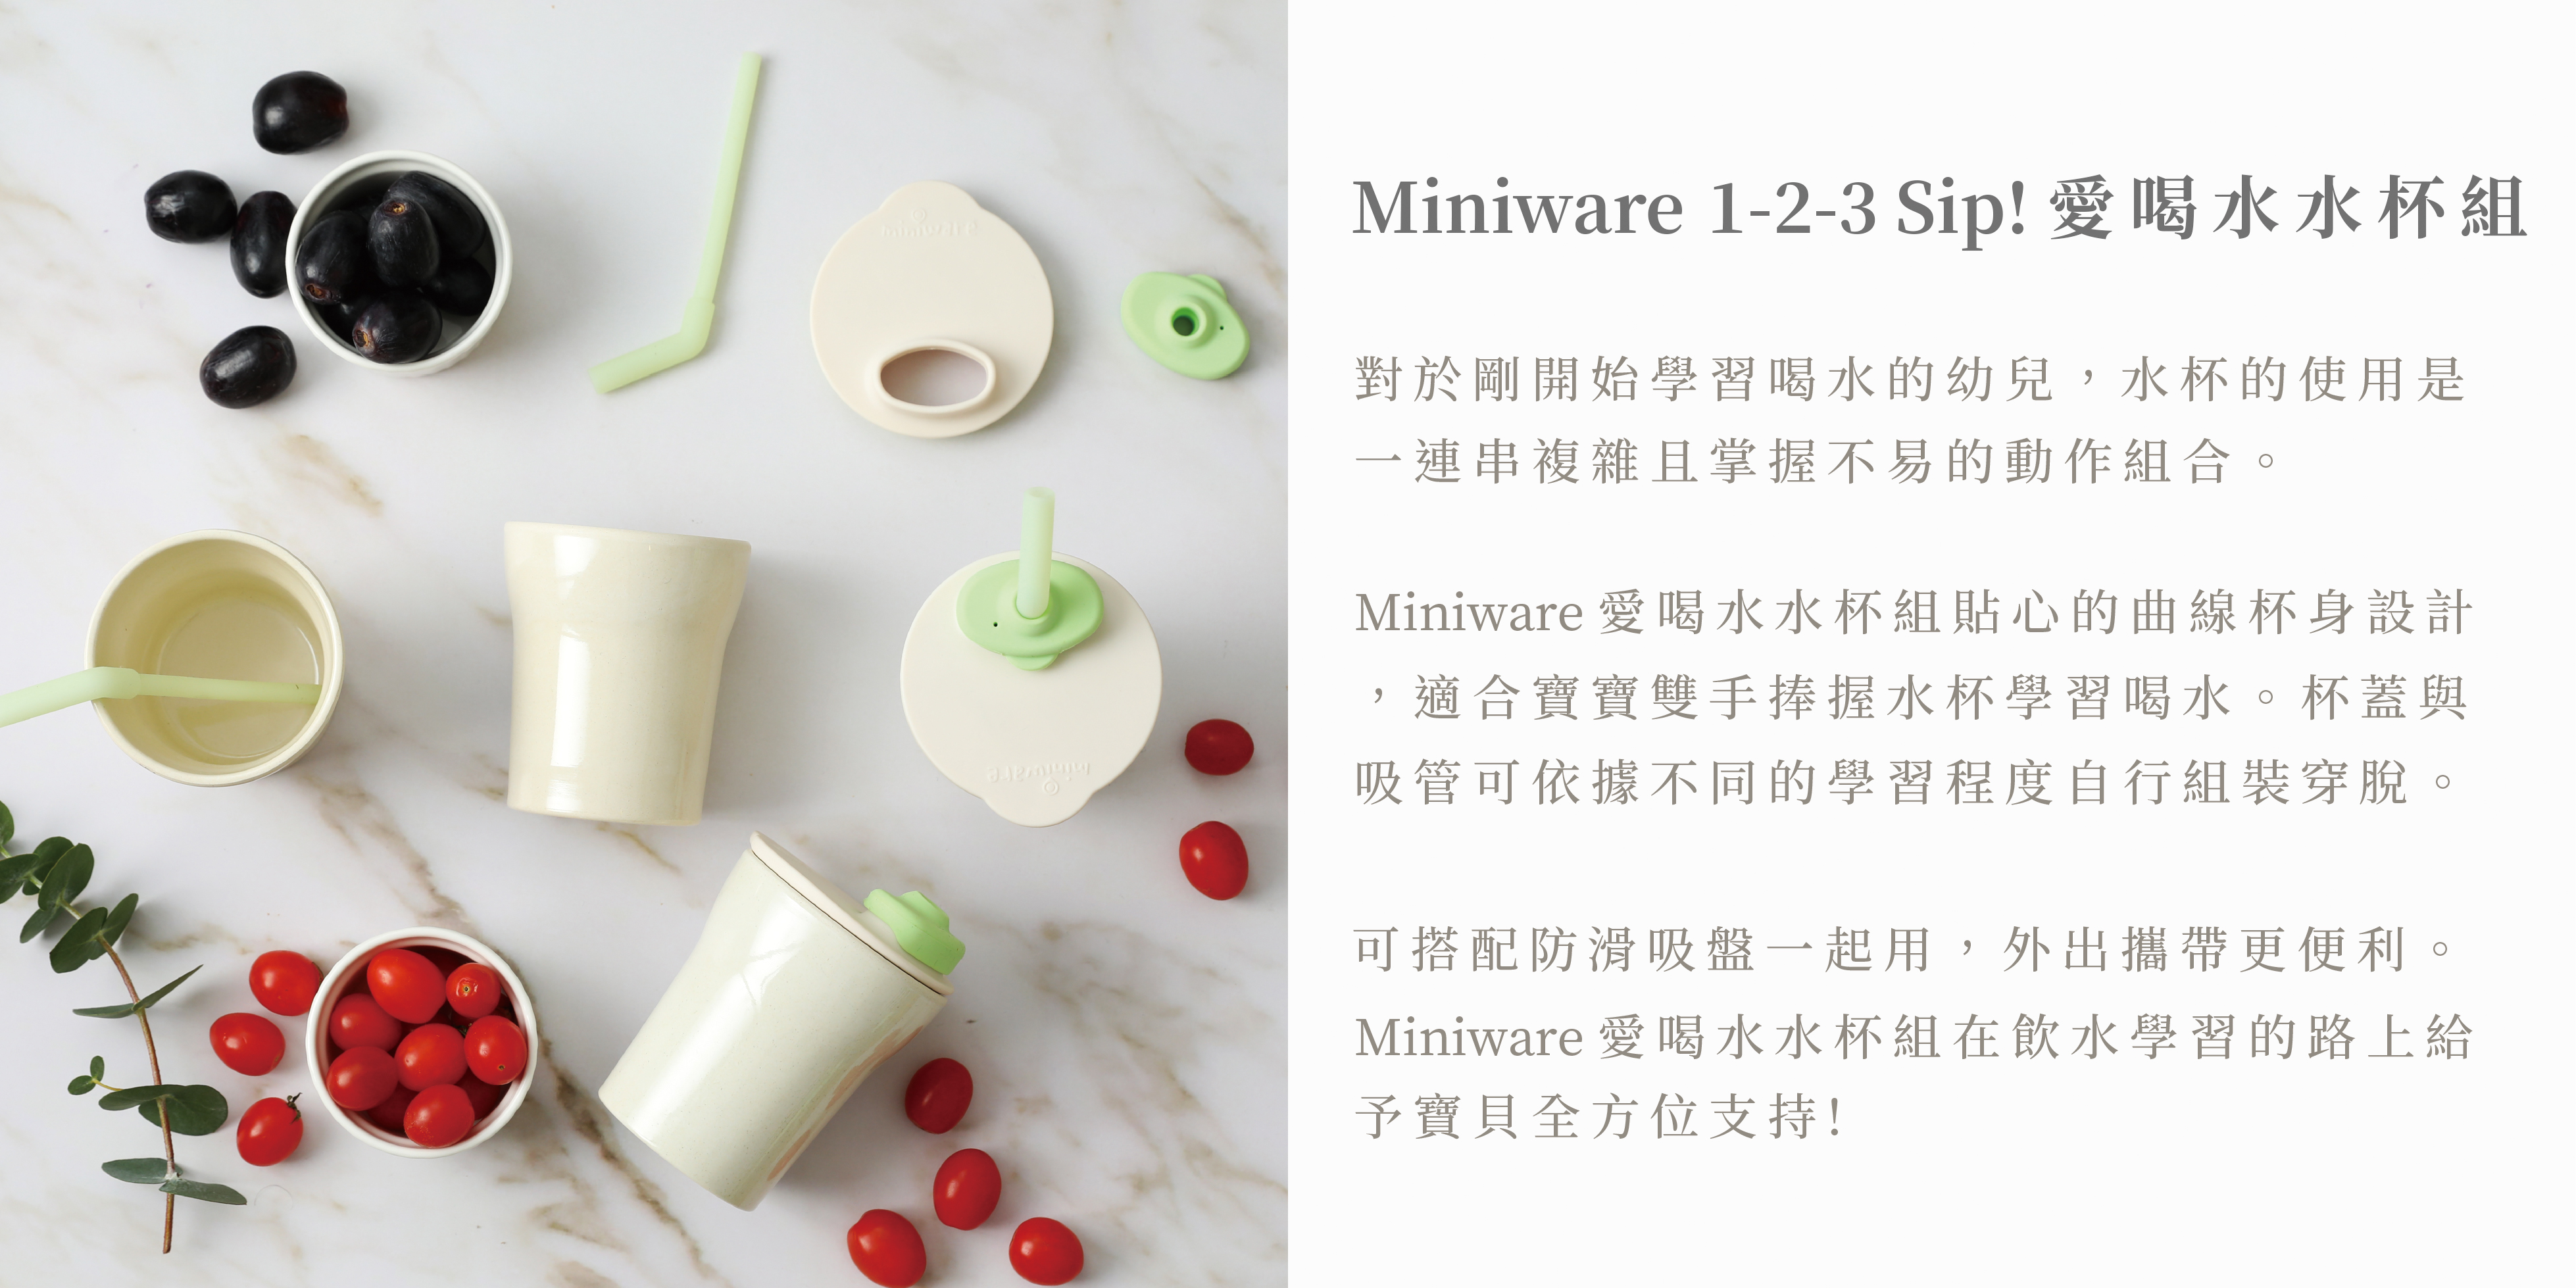 Miniware 天然寶貝兒童學習餐具 1-2-3 Sip! 愛喝水水杯組